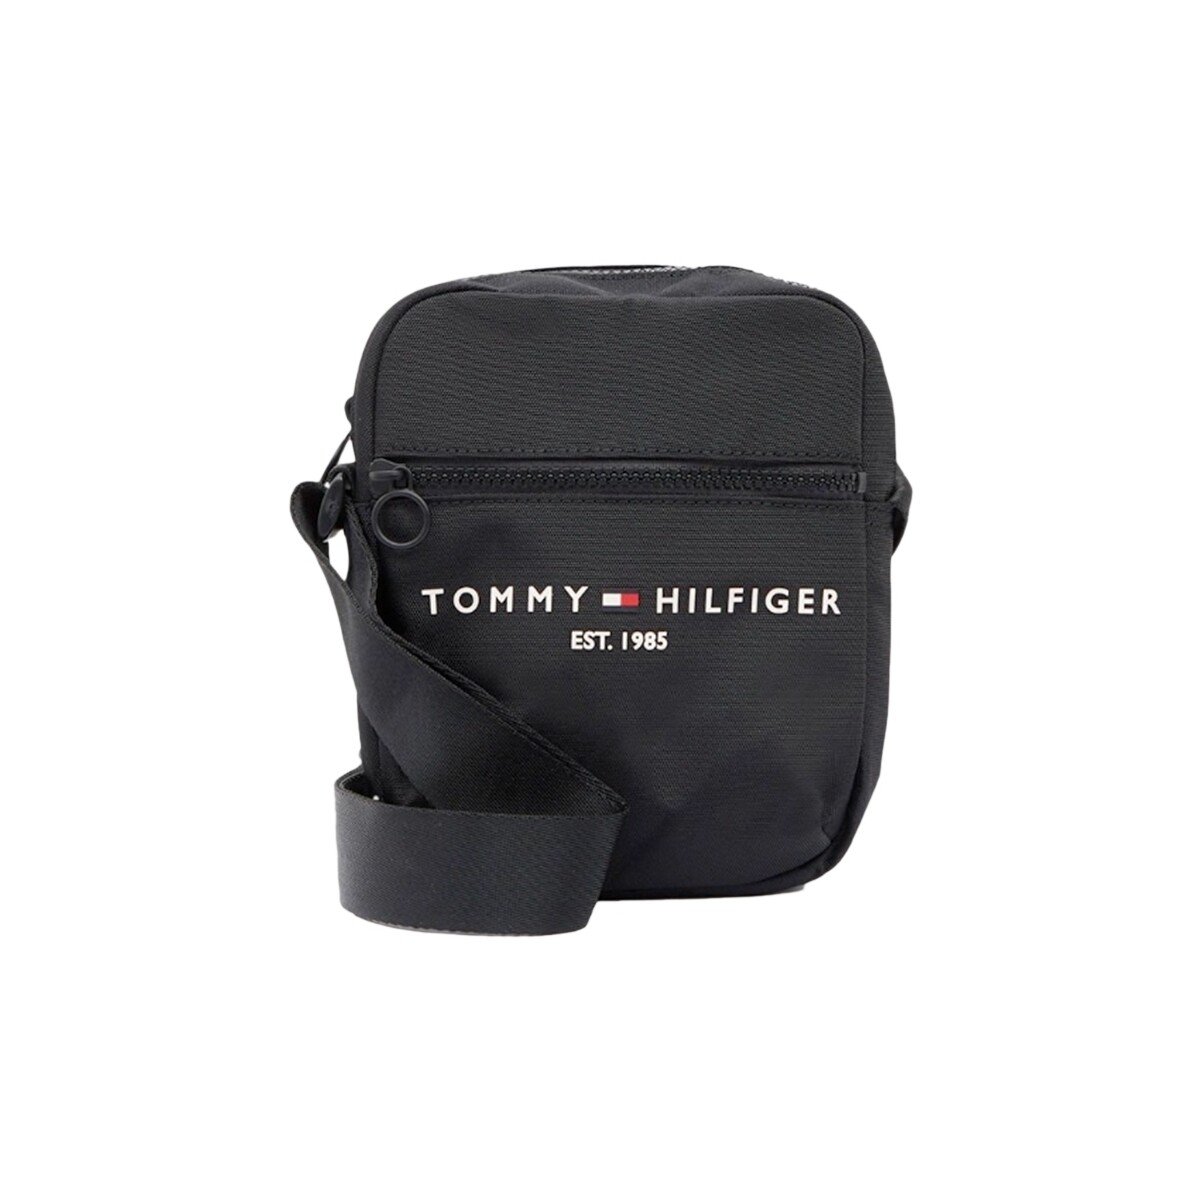 Taschen Herren Geldtasche / Handtasche Tommy Jeans Essential logo flag Schwarz